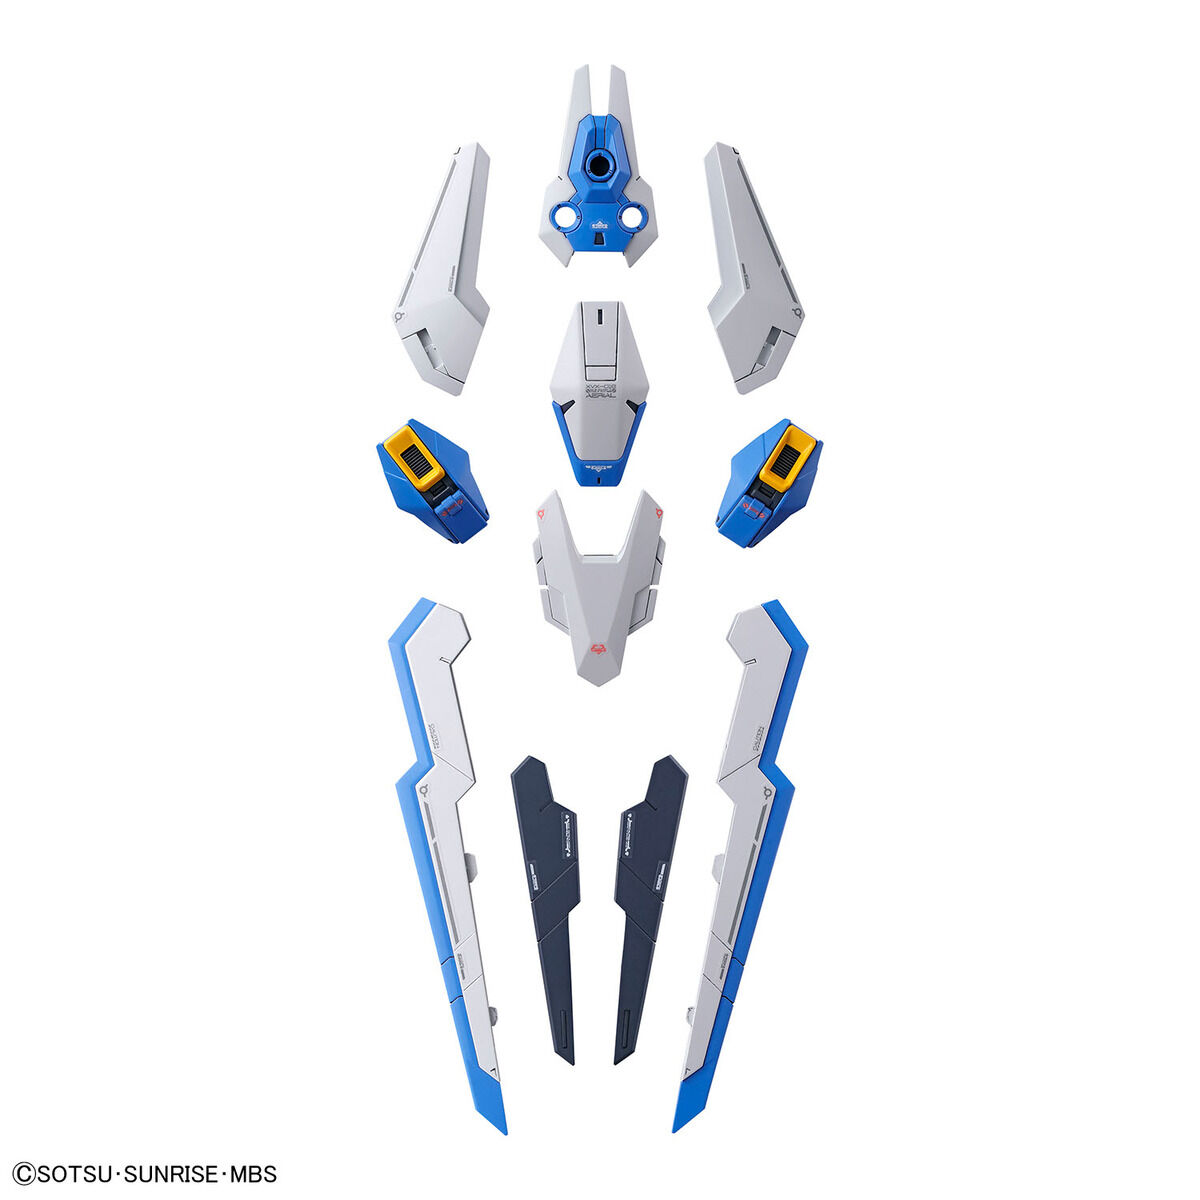 Full Mechanics 1/100 Gundam Aerial